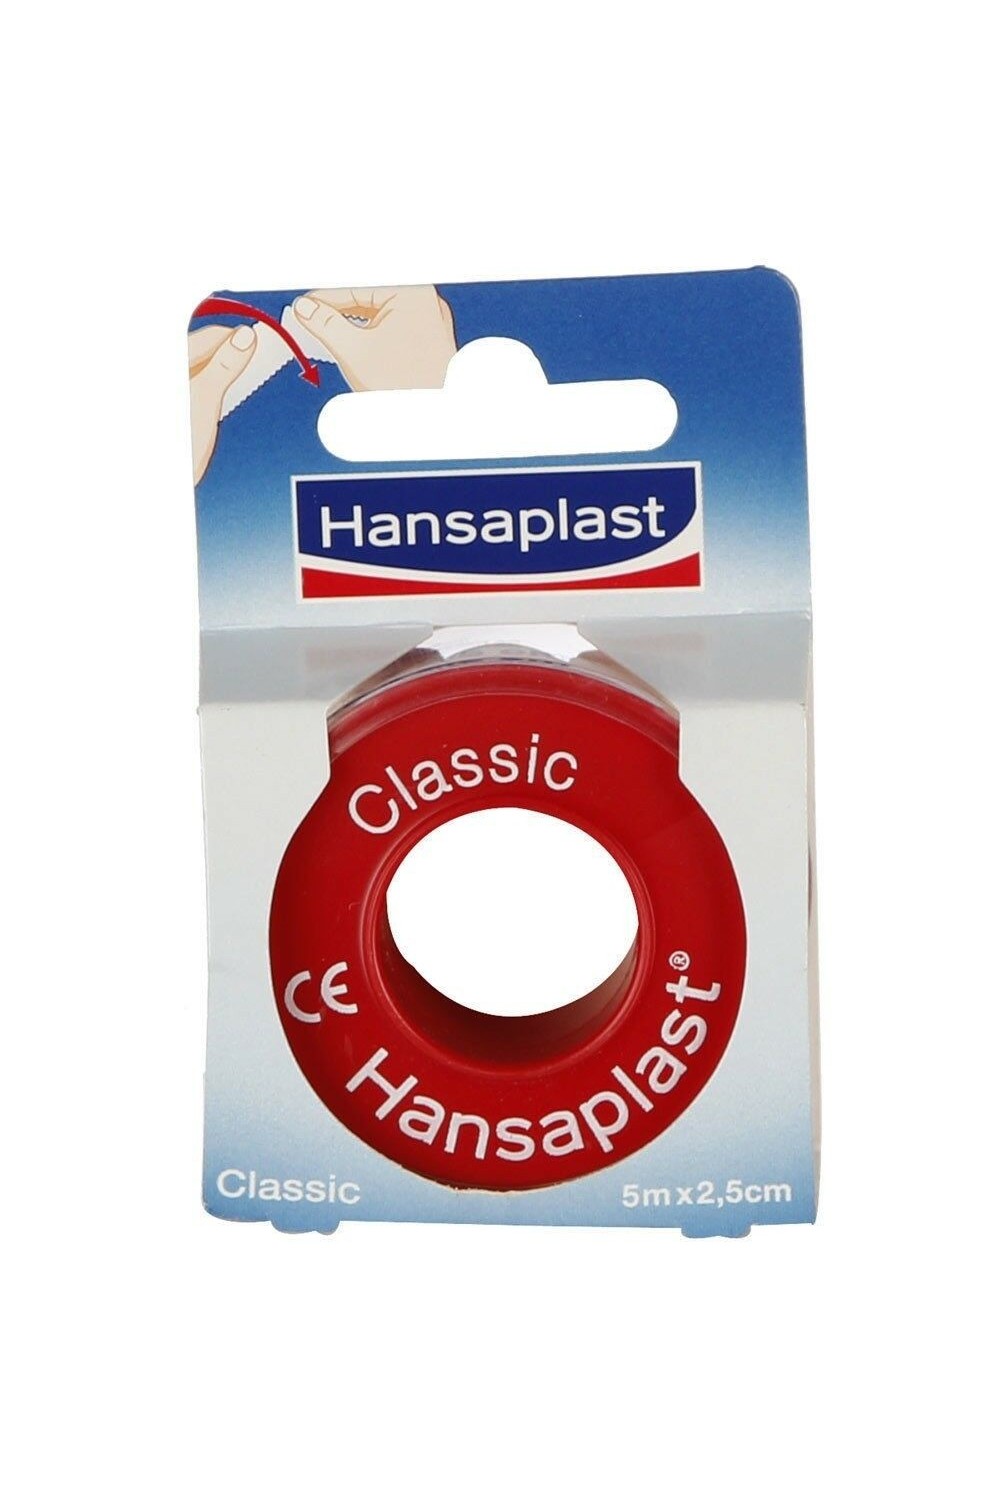 Hansaplast Classic Adhesive Tape 5mx2,5cm 1pc